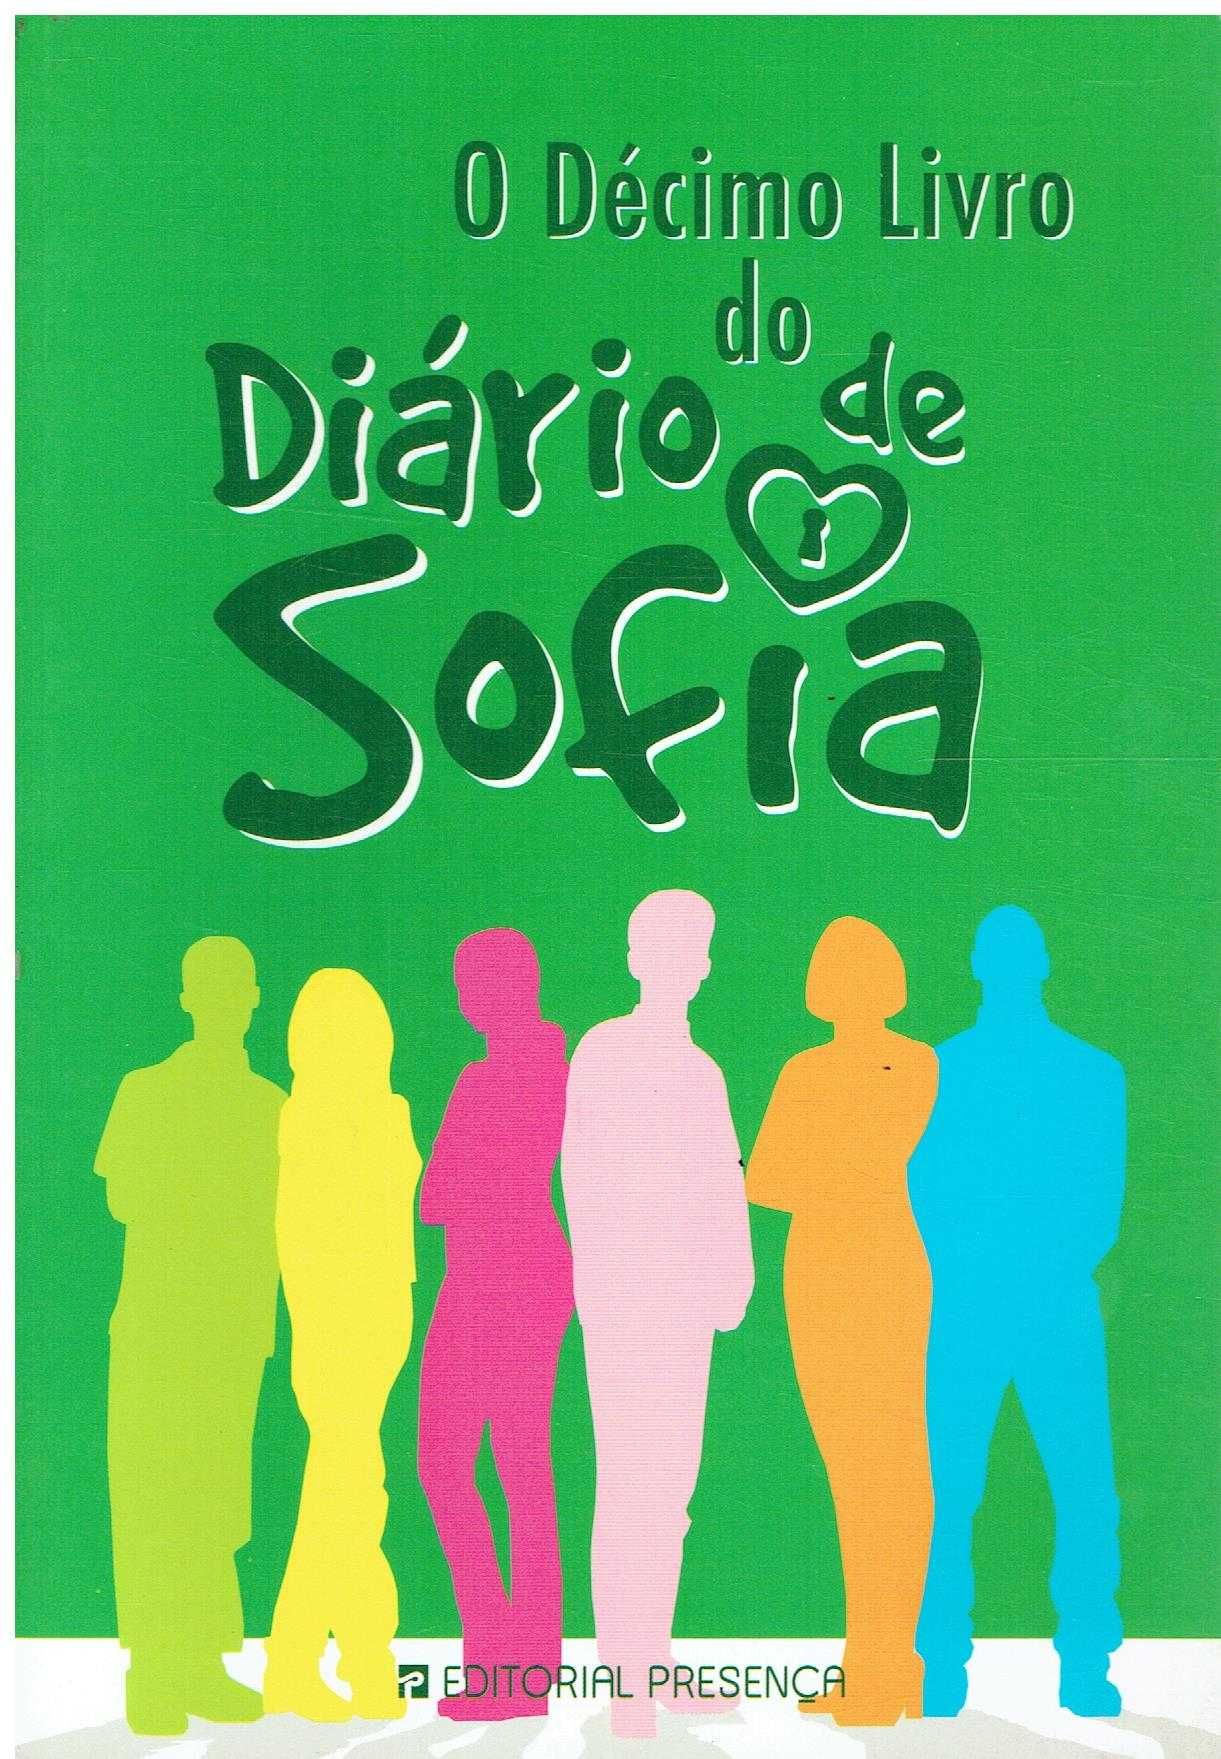 9759

O Décimo Livro do Diário de Sofia
de Marta Gomes